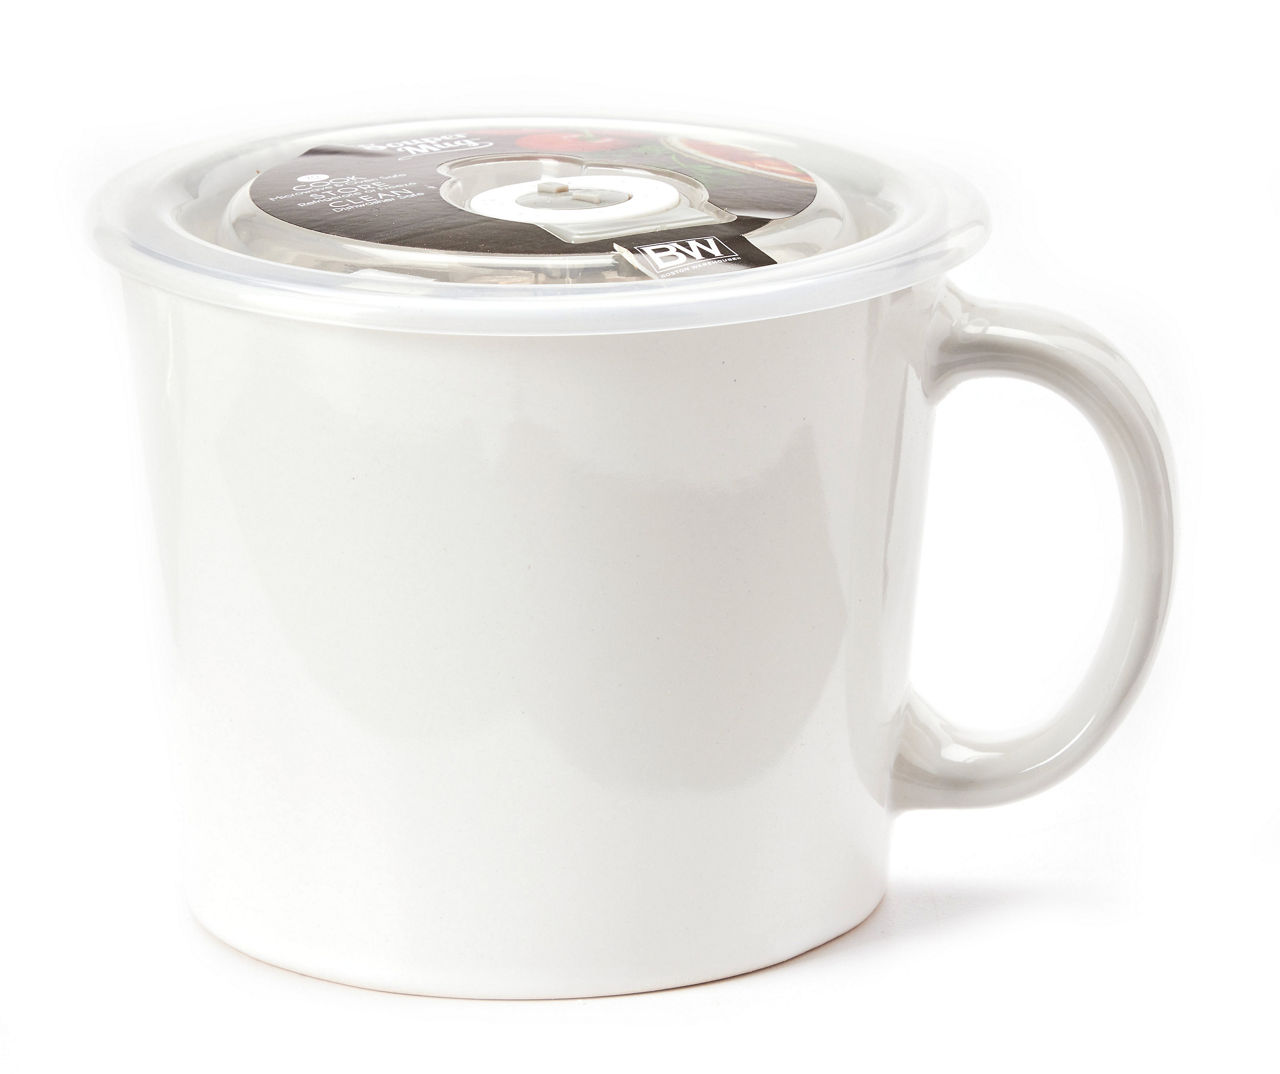 Large Ceramic Coffee Mug Lid  Ceramic Mug Lid Microwavable